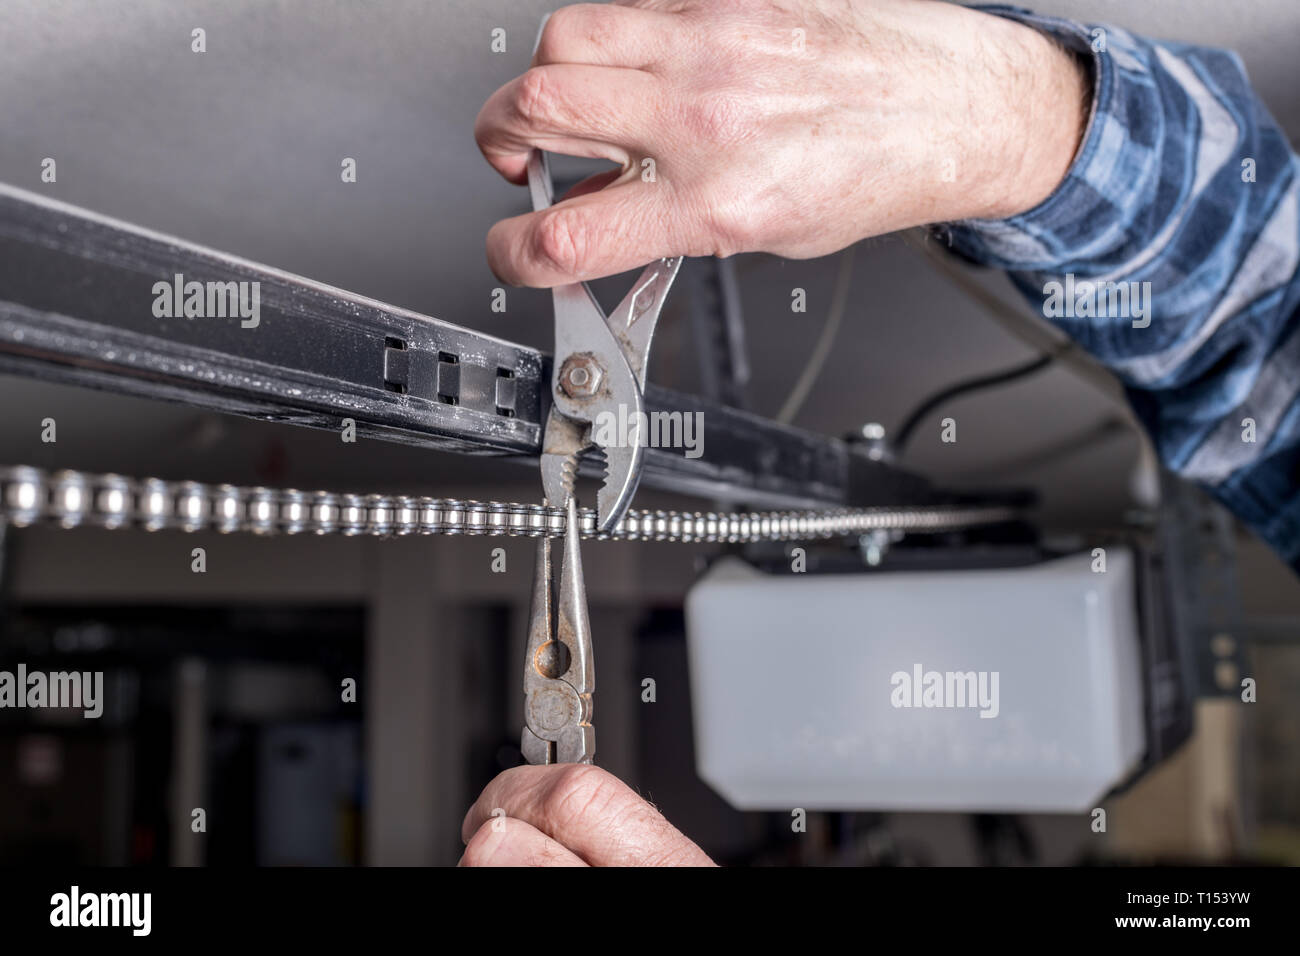 Instandhaltung erfolgen eines Home Garagentor Kette mit plyers  Stockfotografie - Alamy